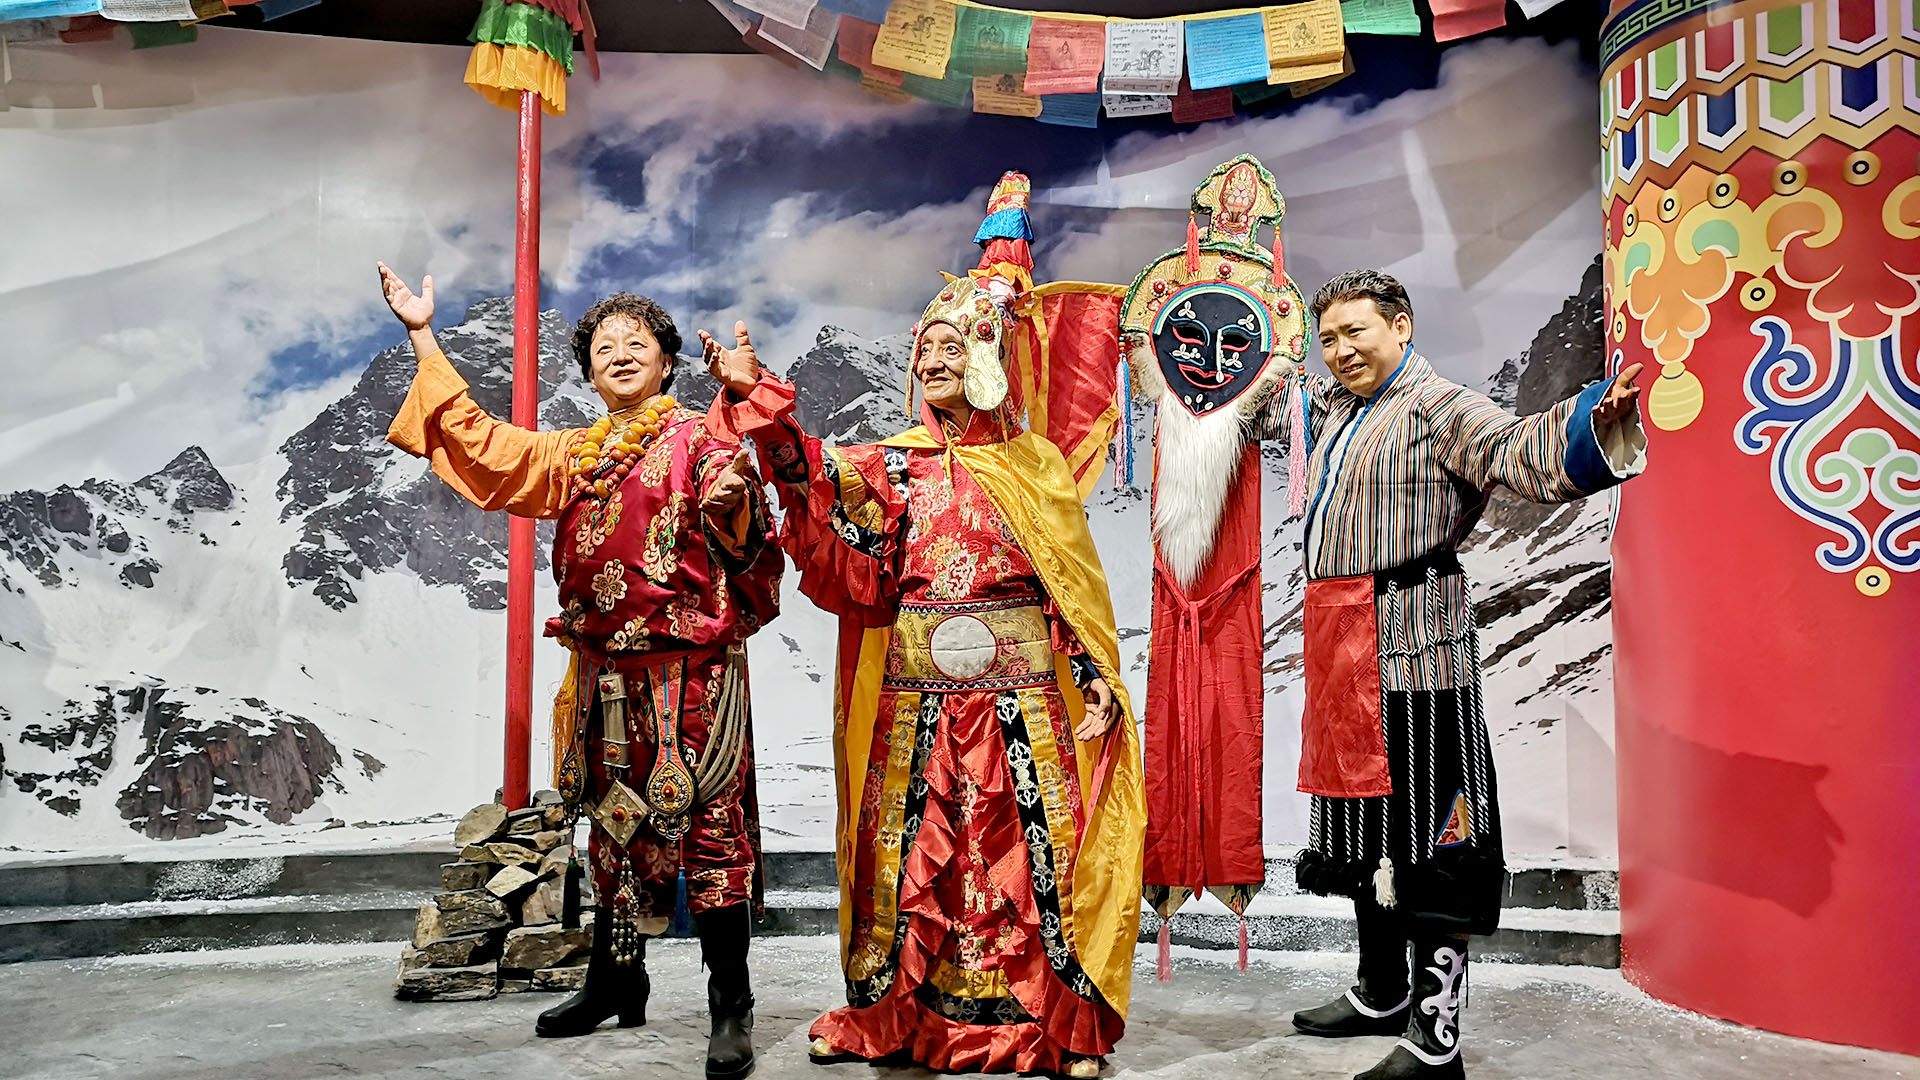 Weimukailai Tibet Wax Museum | DXDF, Grand Orient Wax Figure